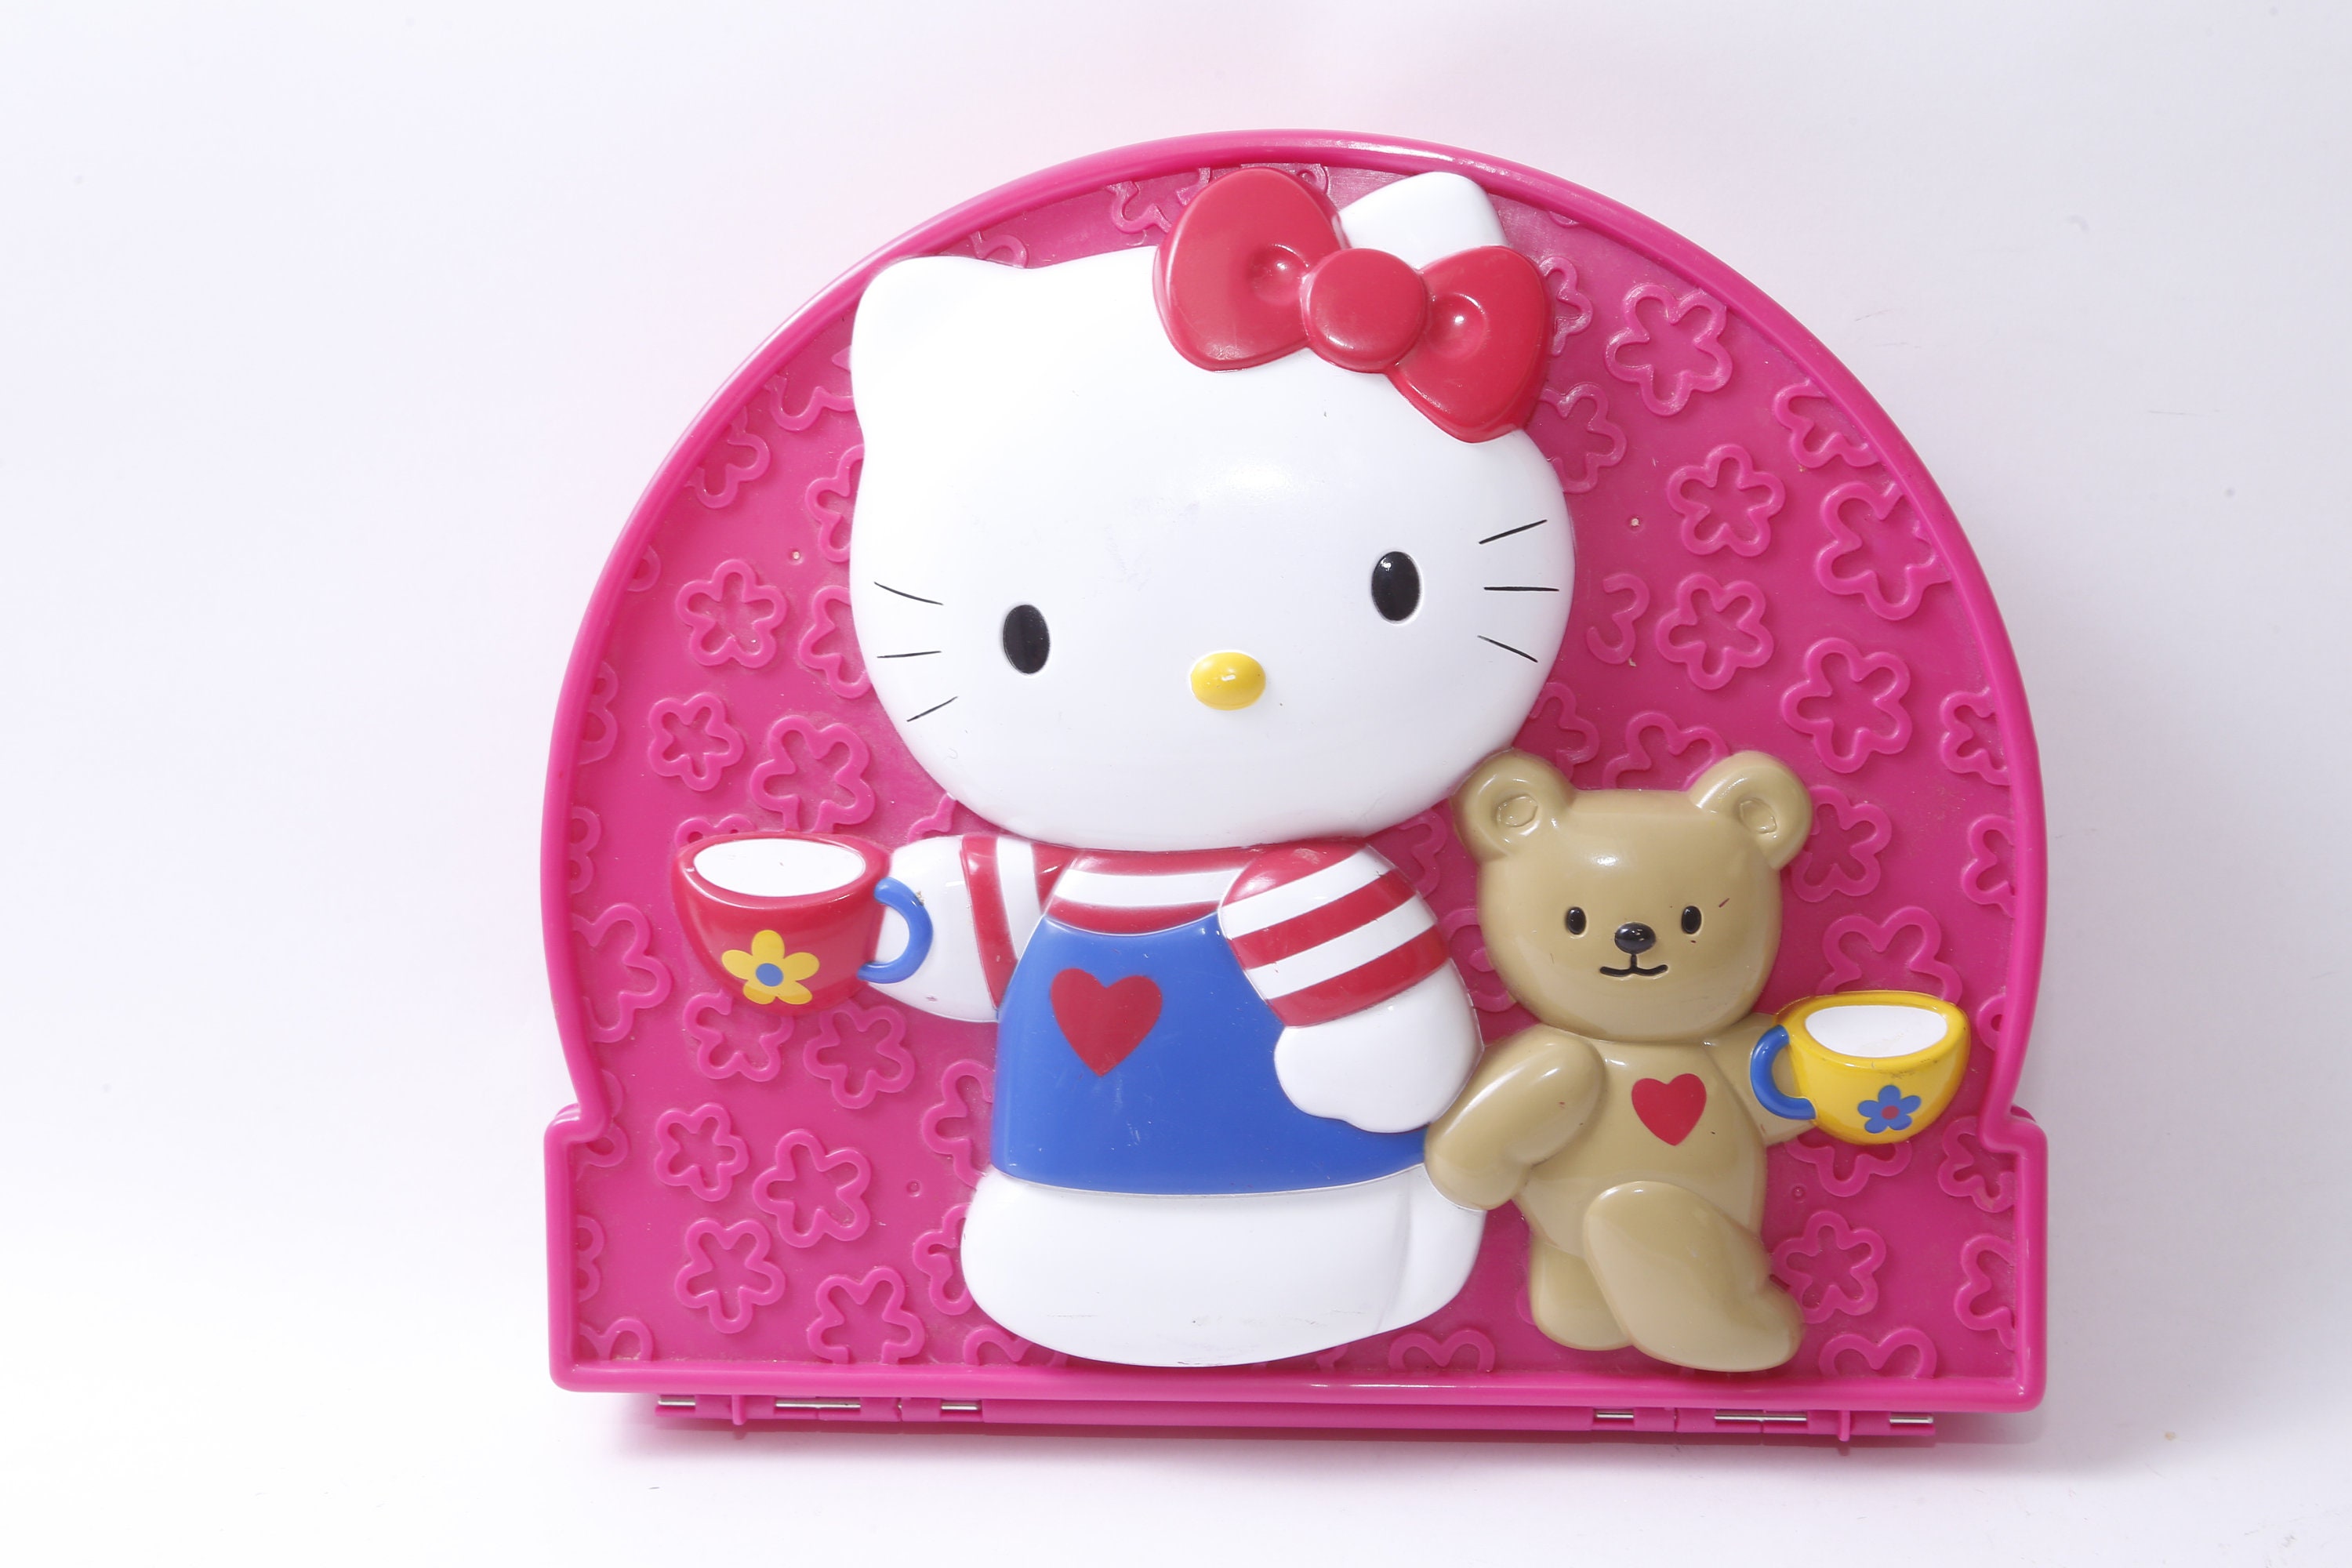 RARE Hello Kitty collectible y2k wallet by Sanrio SUPER CUTE retro